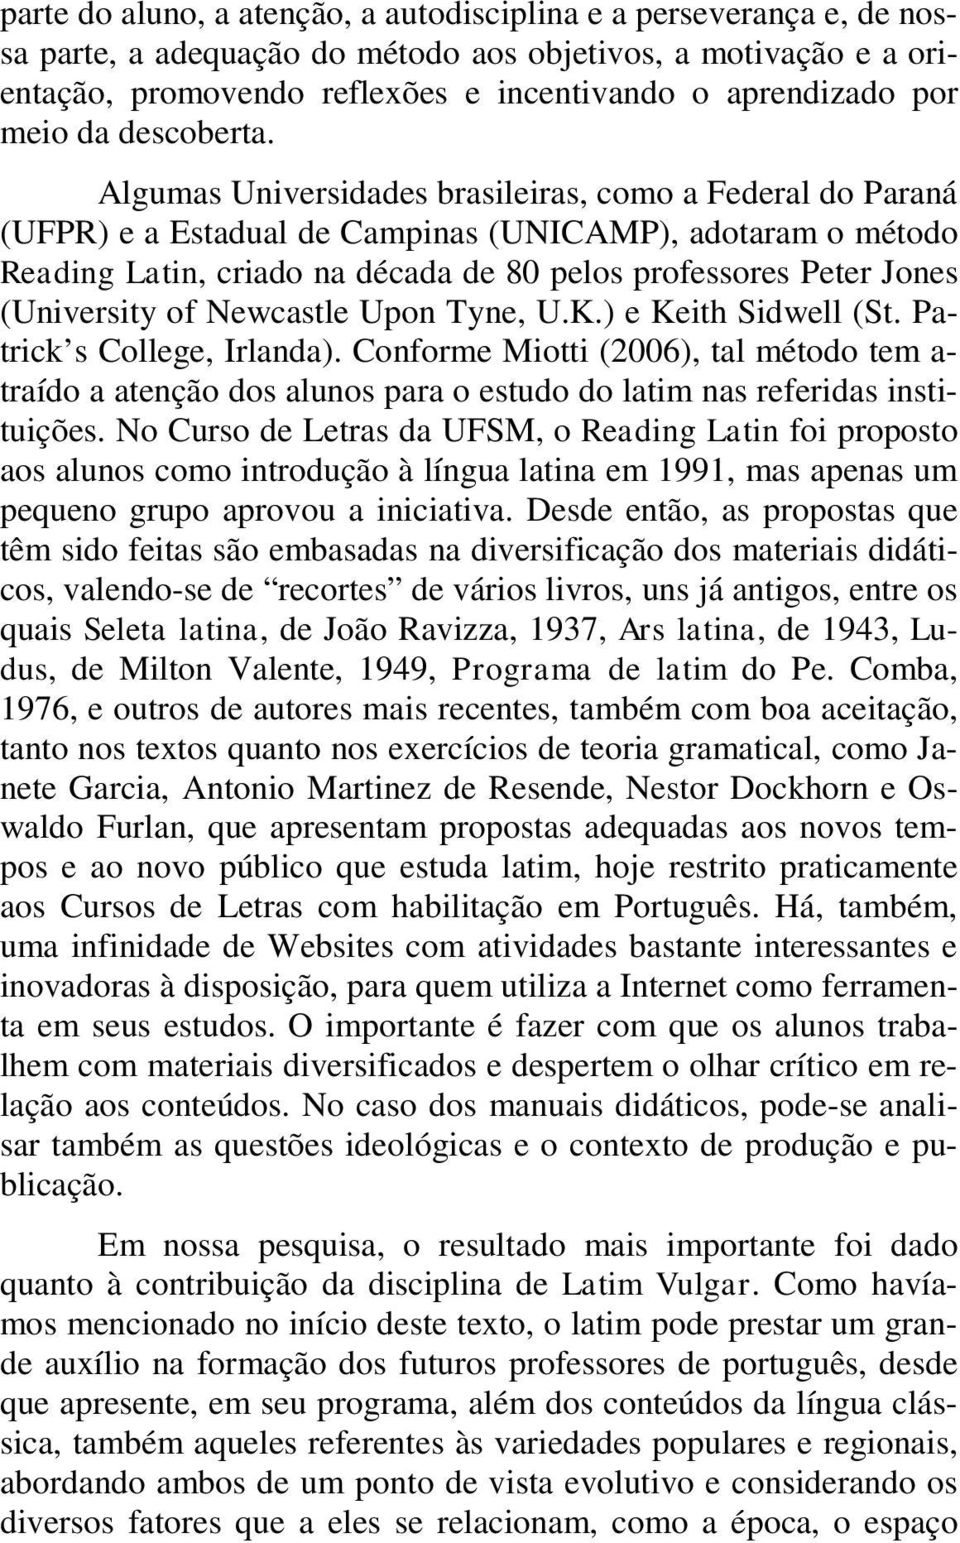 Algumas Universidades brasileiras, como a Federal do Paraná (UFPR) e a Estadual de Campinas (UNICAMP), adotaram o método Reading Latin, criado na década de 80 pelos professores Peter Jones